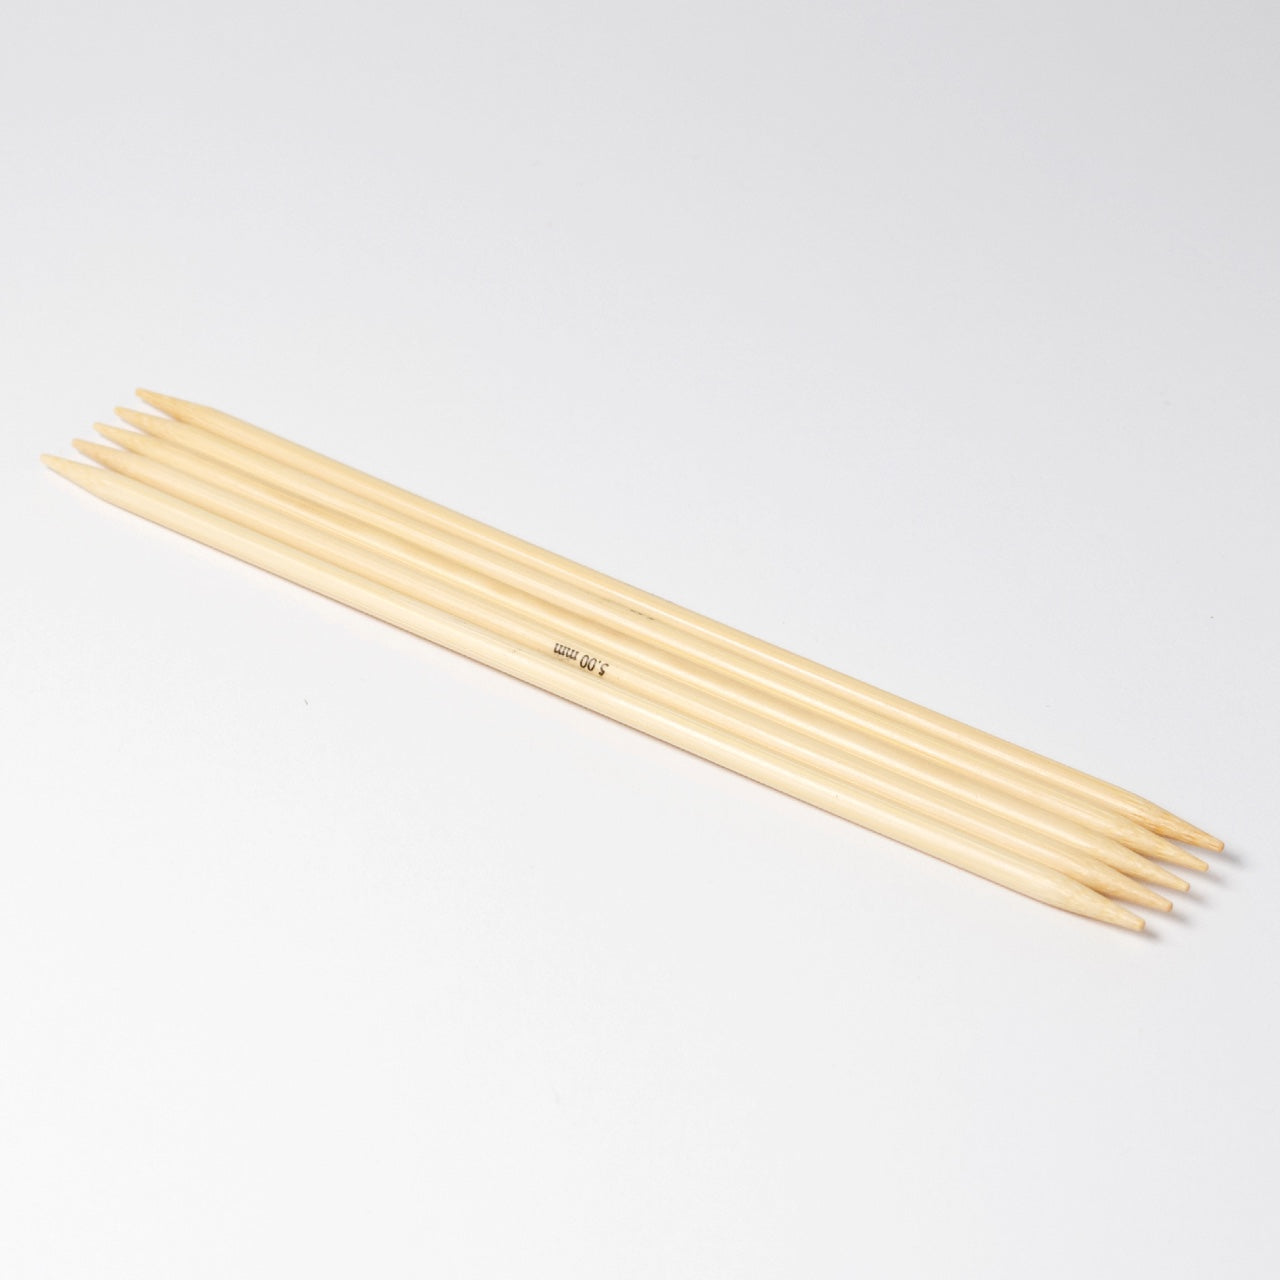 Hjertegarn // STYLE BAMBOO // Strømpepinde 20 cm i bambus str. 5 mm